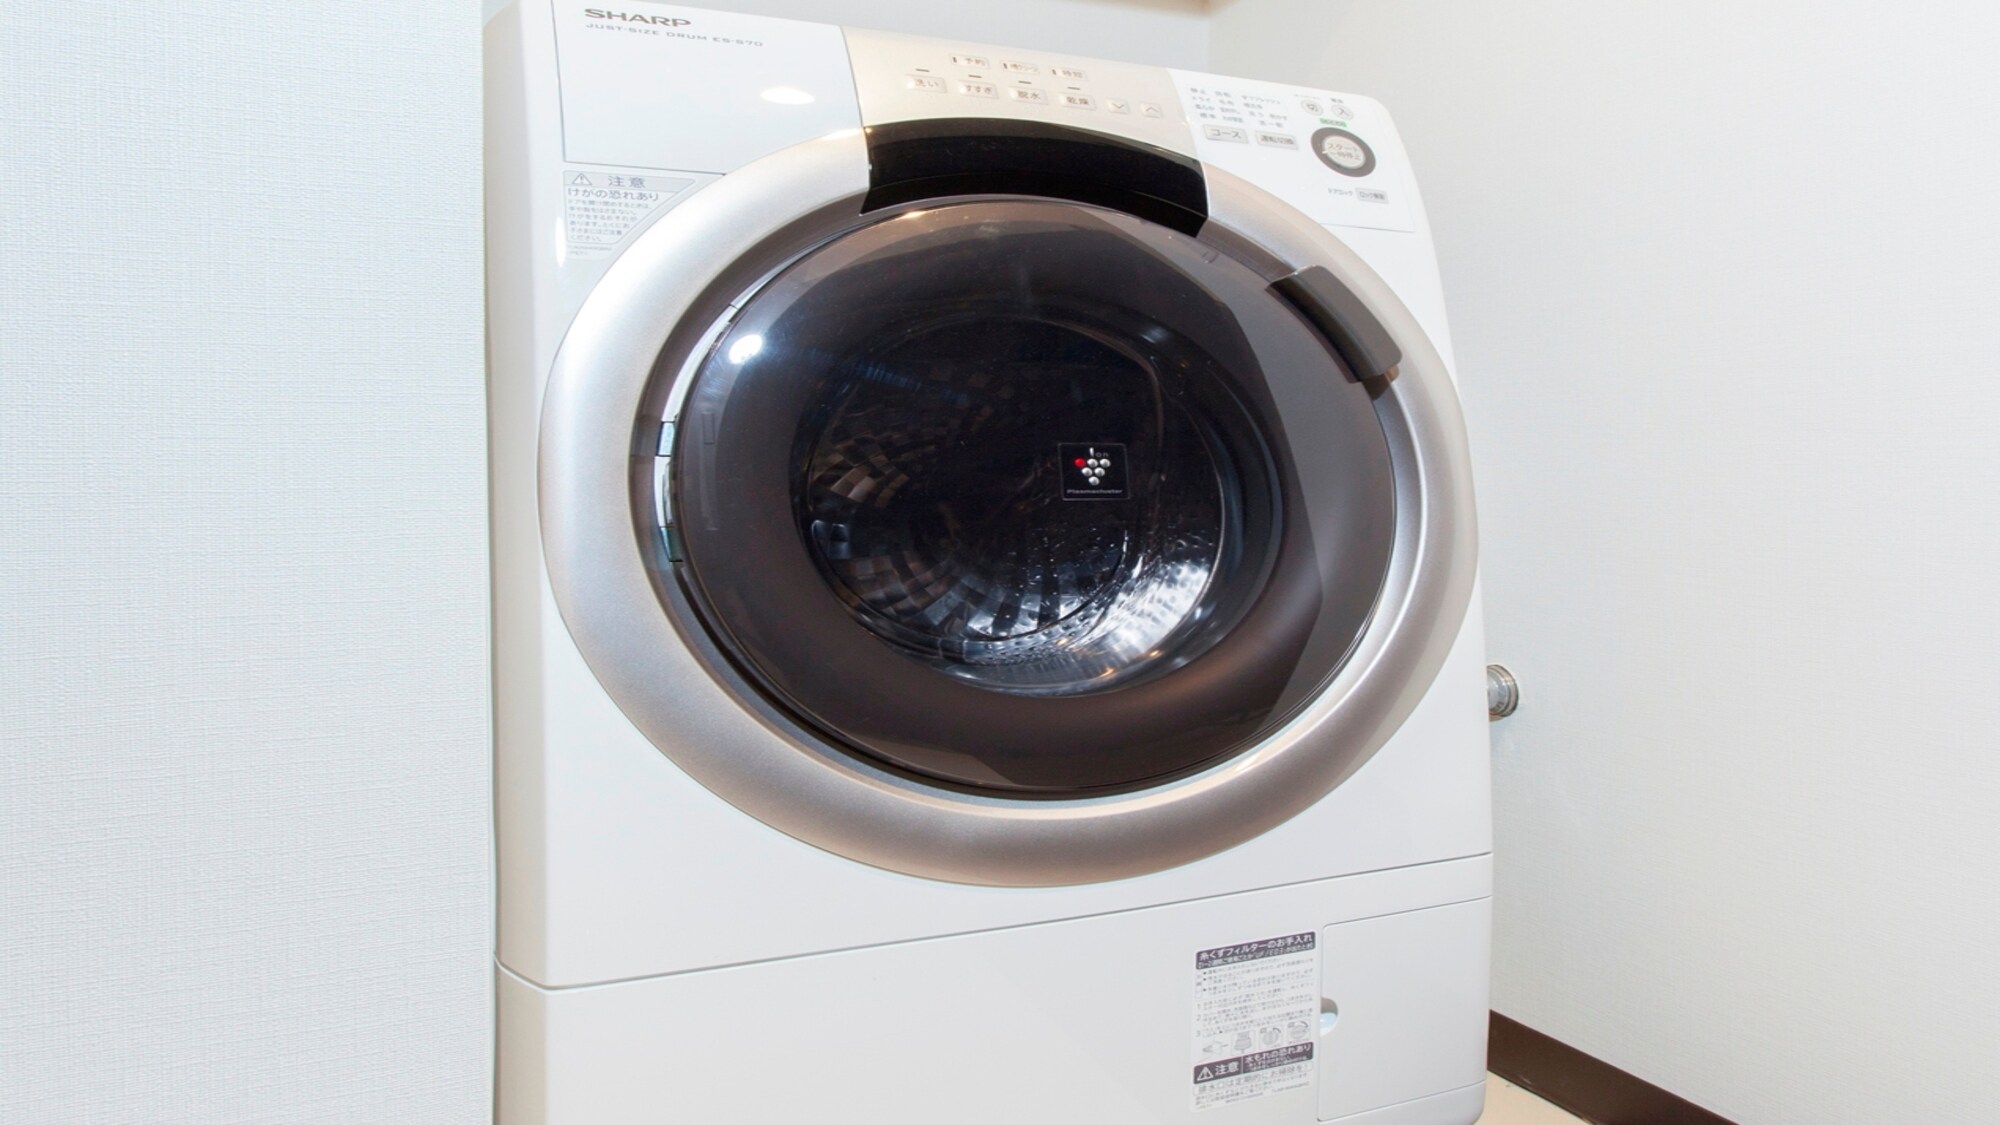 Washing and drying machine